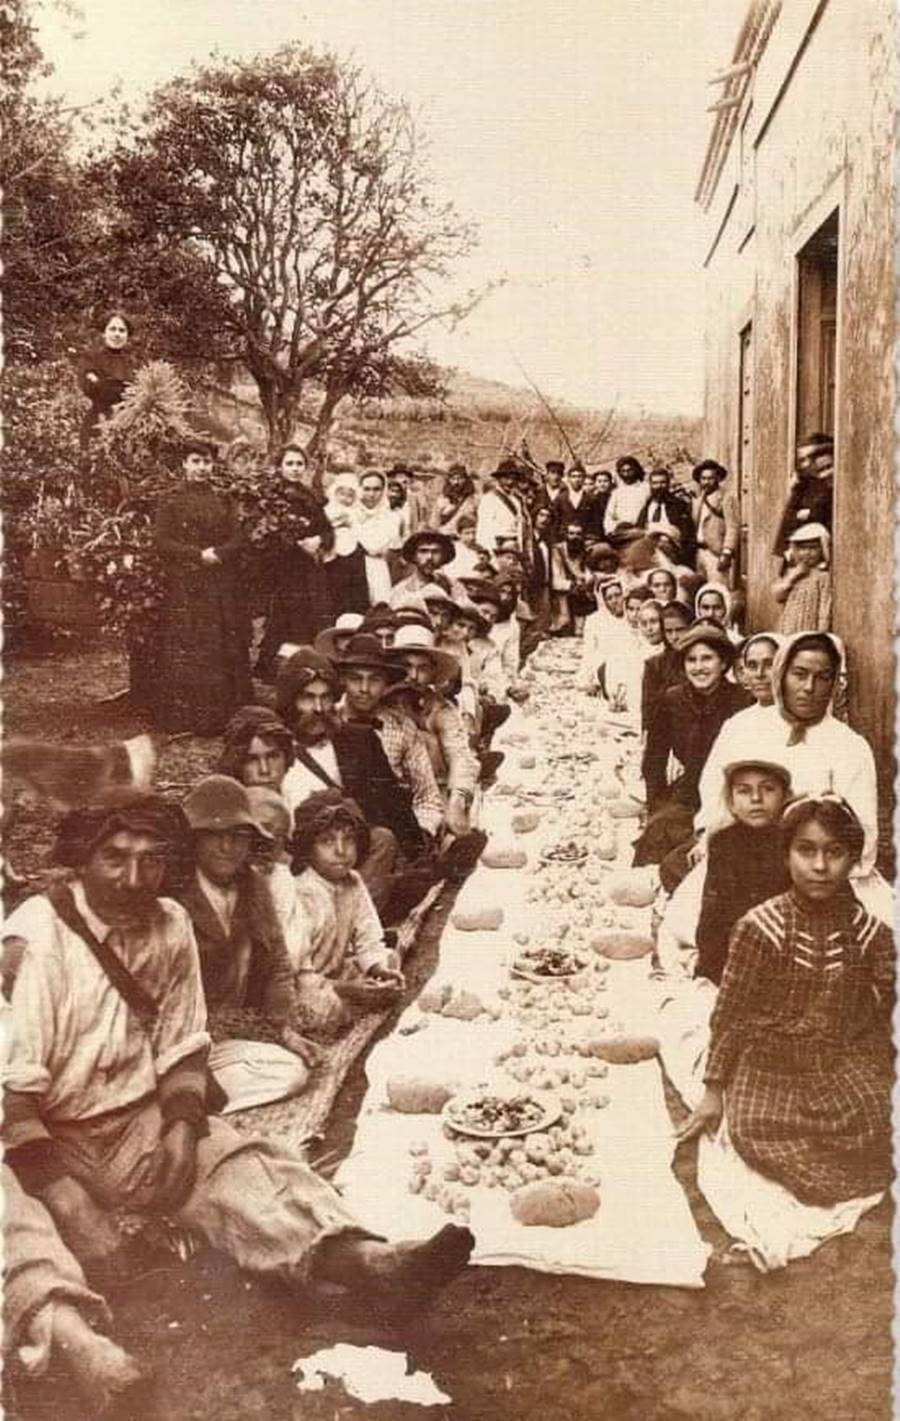 Gallofa 1906, comida con gofio y papas. Puntallana